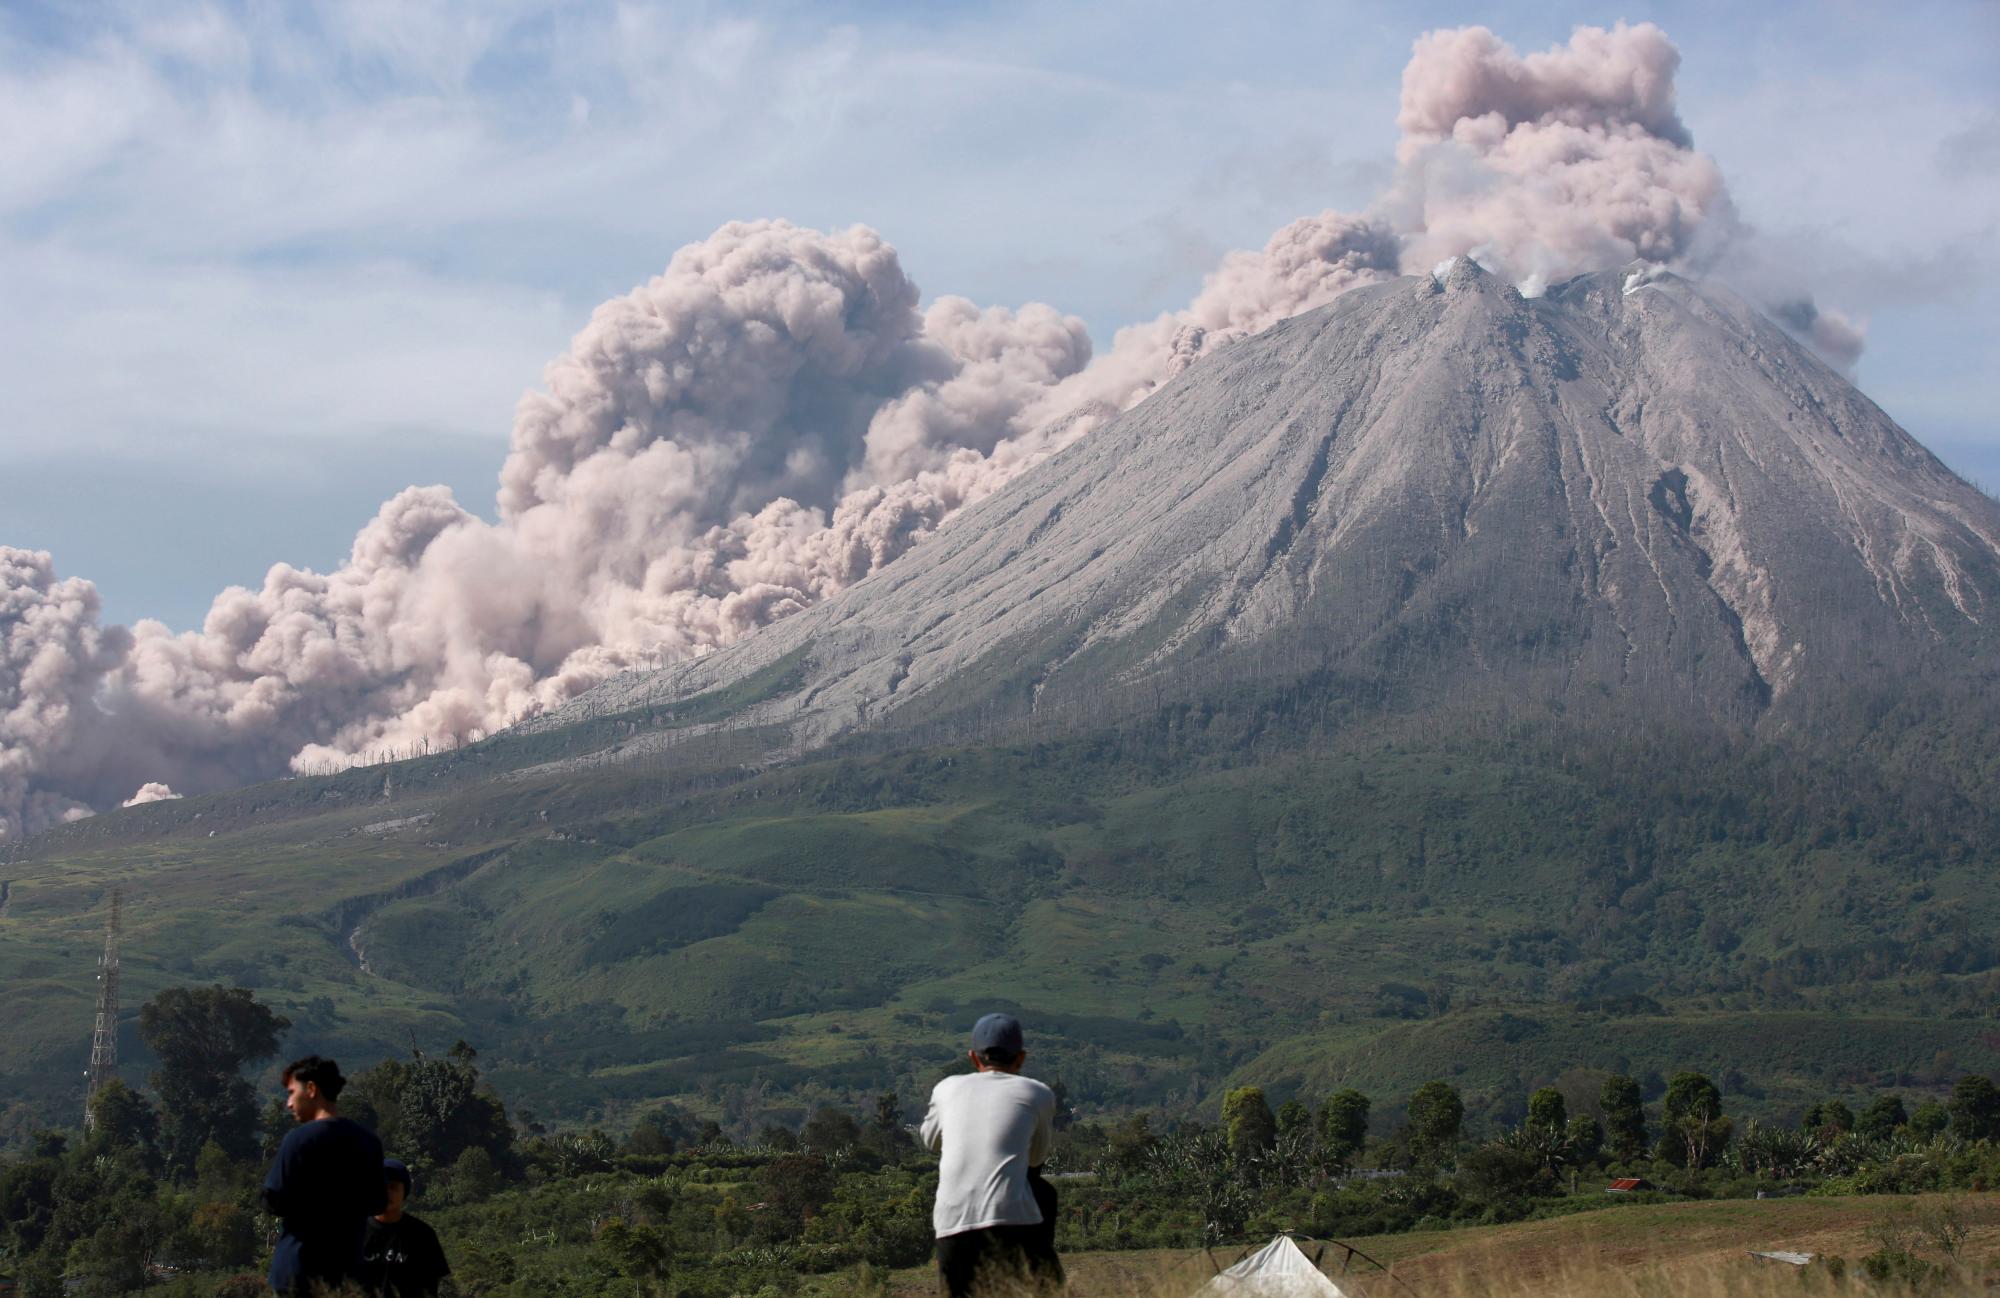 La gente observa cómo el monte Sinabung arroja materiales volcánicos durante una erupción en Karo, en el norte de Sumatra, Indonesia, el jueves 11 de marzo de 2021. El volcán desató una avalancha de abrasadoras nubes de gas que fluían por sus laderas durante la erupción del jueves. No se informó de víctimas.